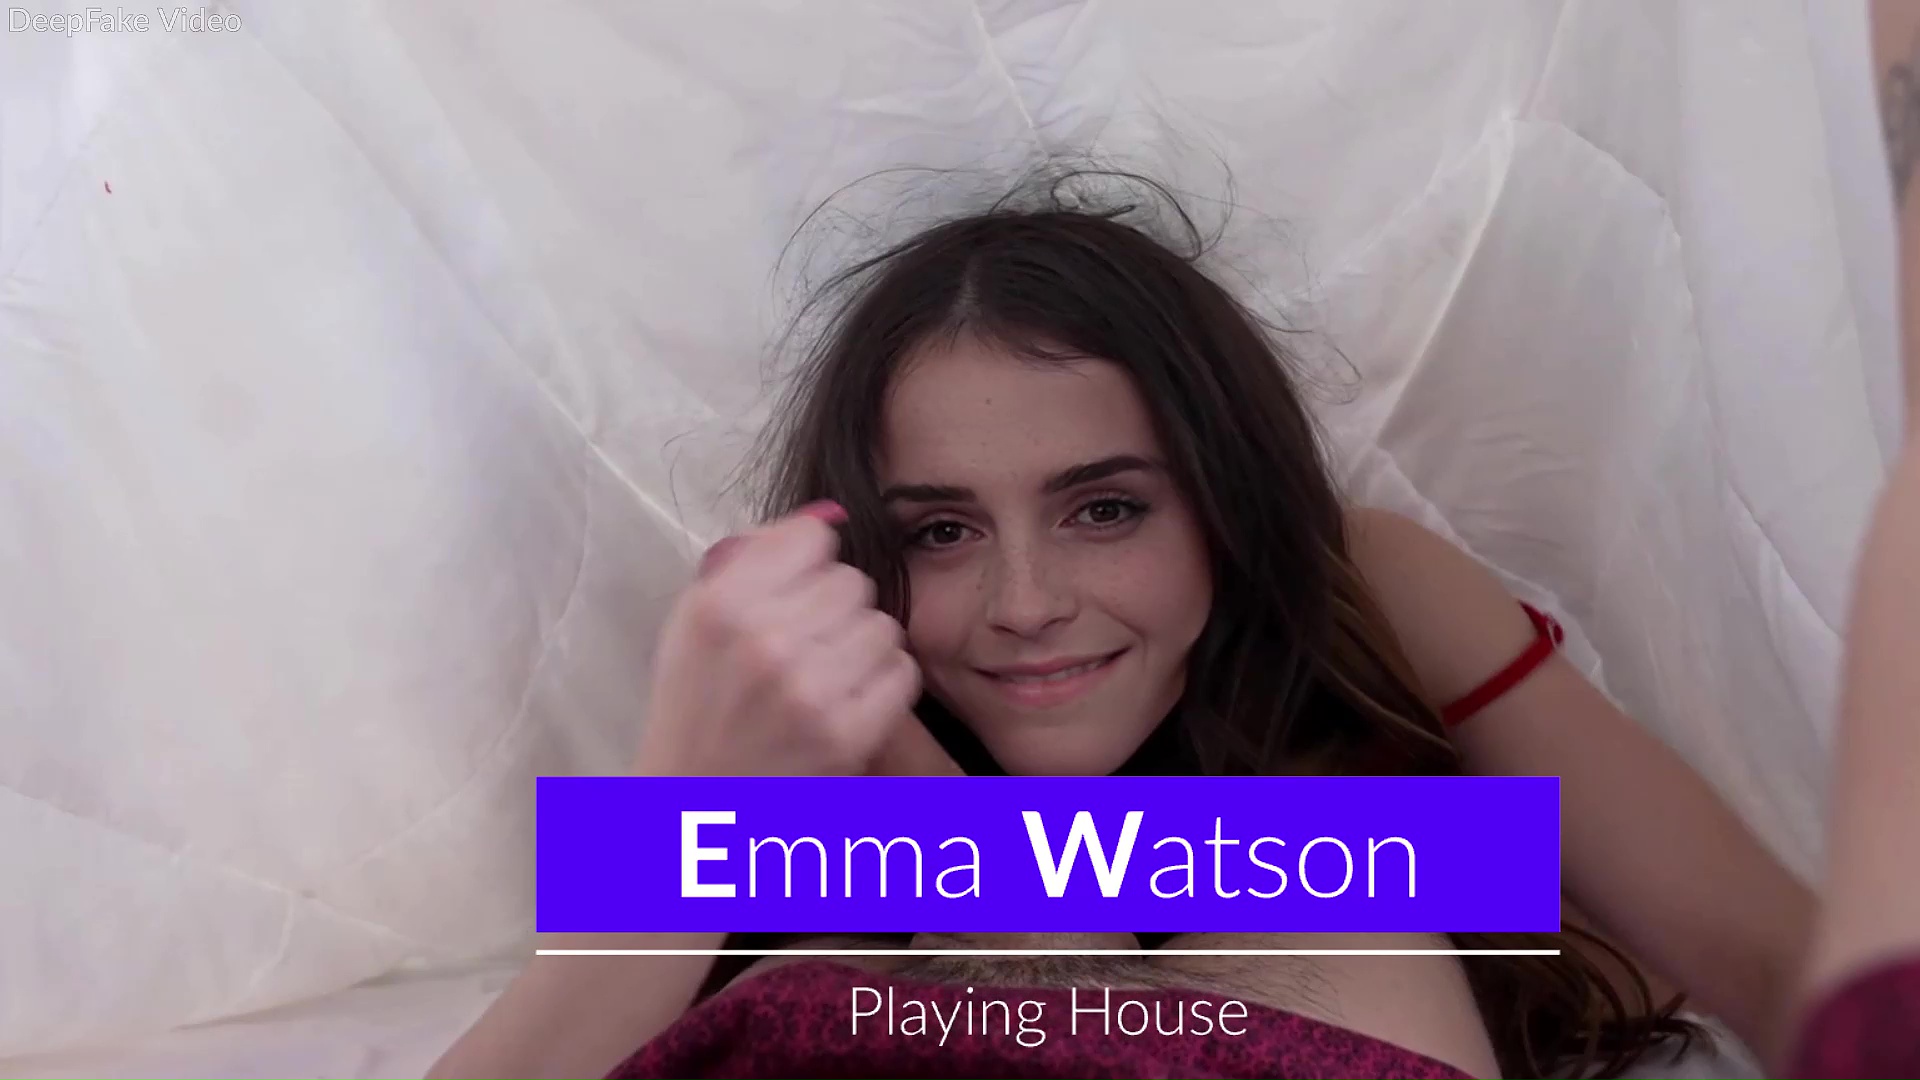 Emma Watson - Playing House - Full Video